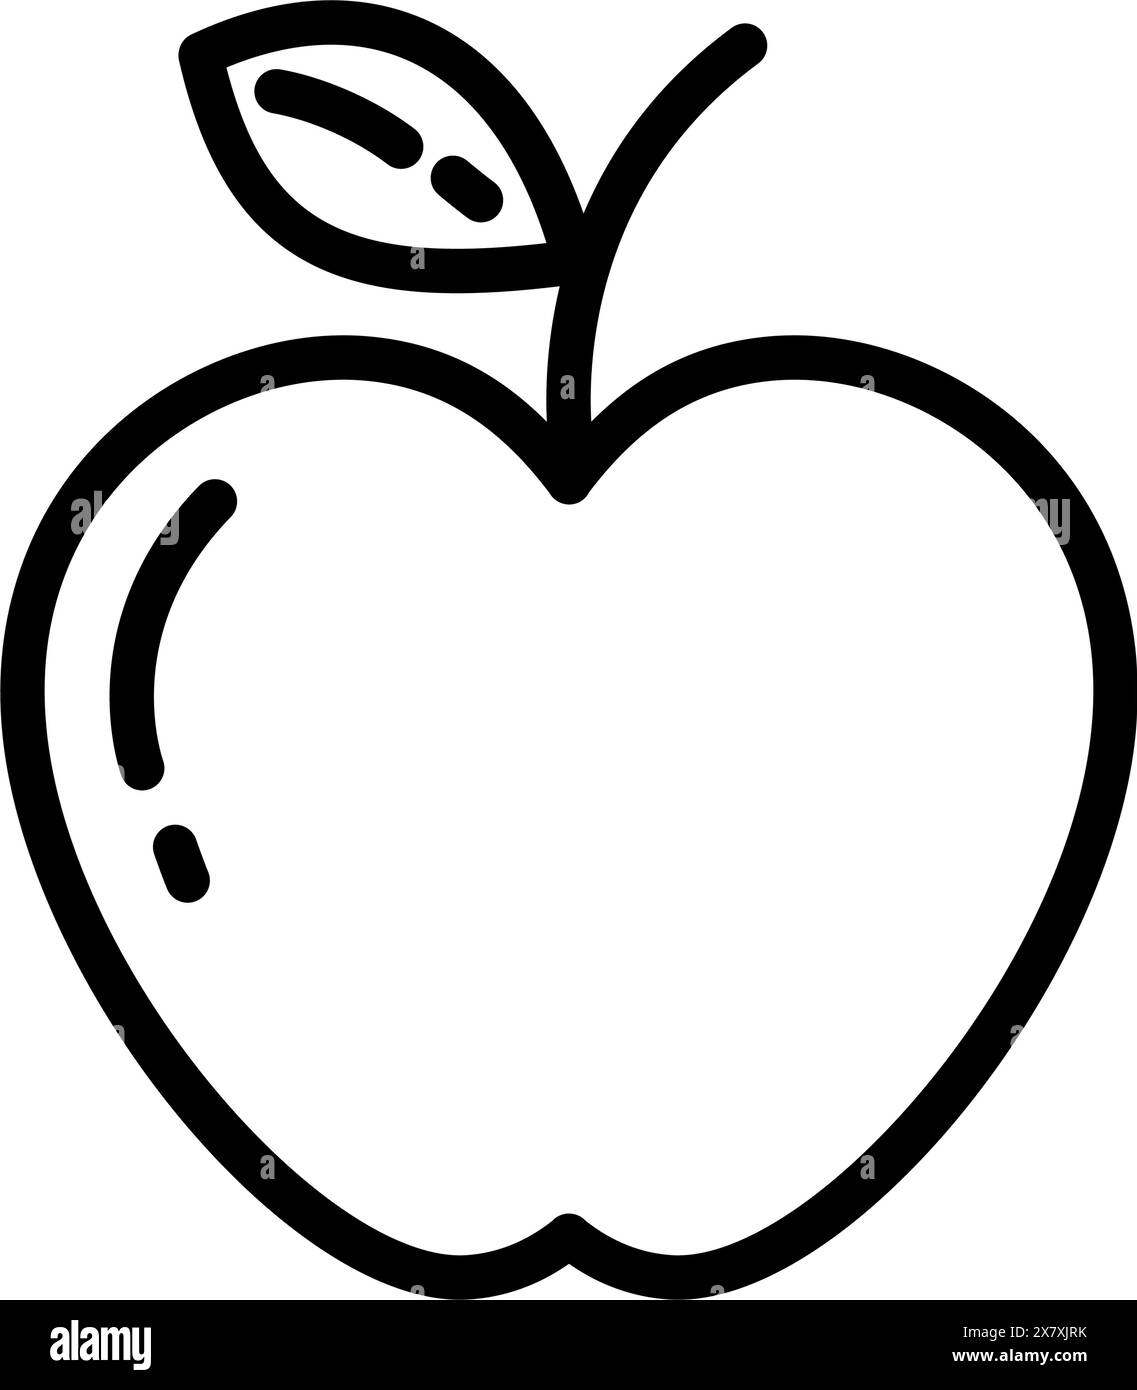 Apple Outline Drawn Autumn Fruit con foglia in stile minimalista adesivo Logo icona design concept isolare EPS Vector Card, poster, banner, brochure, prezzo, etichetta o web, idea di design promozionale Illustrazione Vettoriale